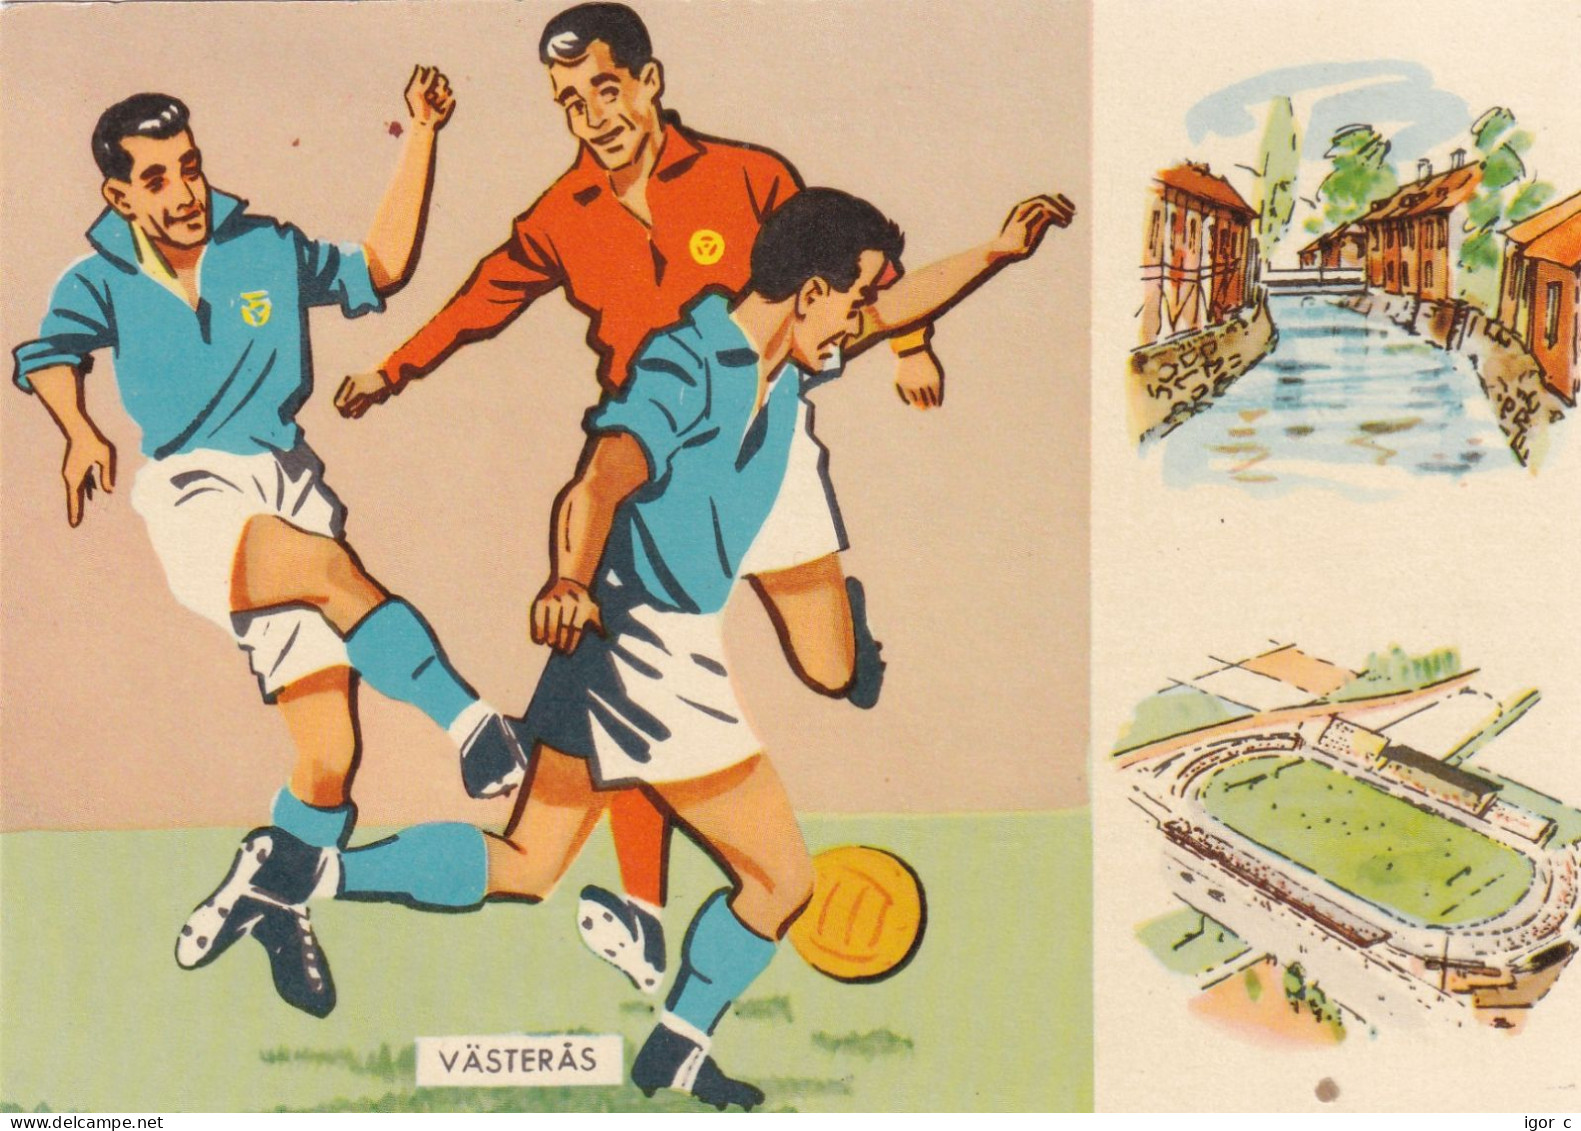 Sweden 1958 Card: Football Fussball Soccer Calcio; FIFA WC 1958 Sweden; France - Yugoslavia Match - 1958 – Suède